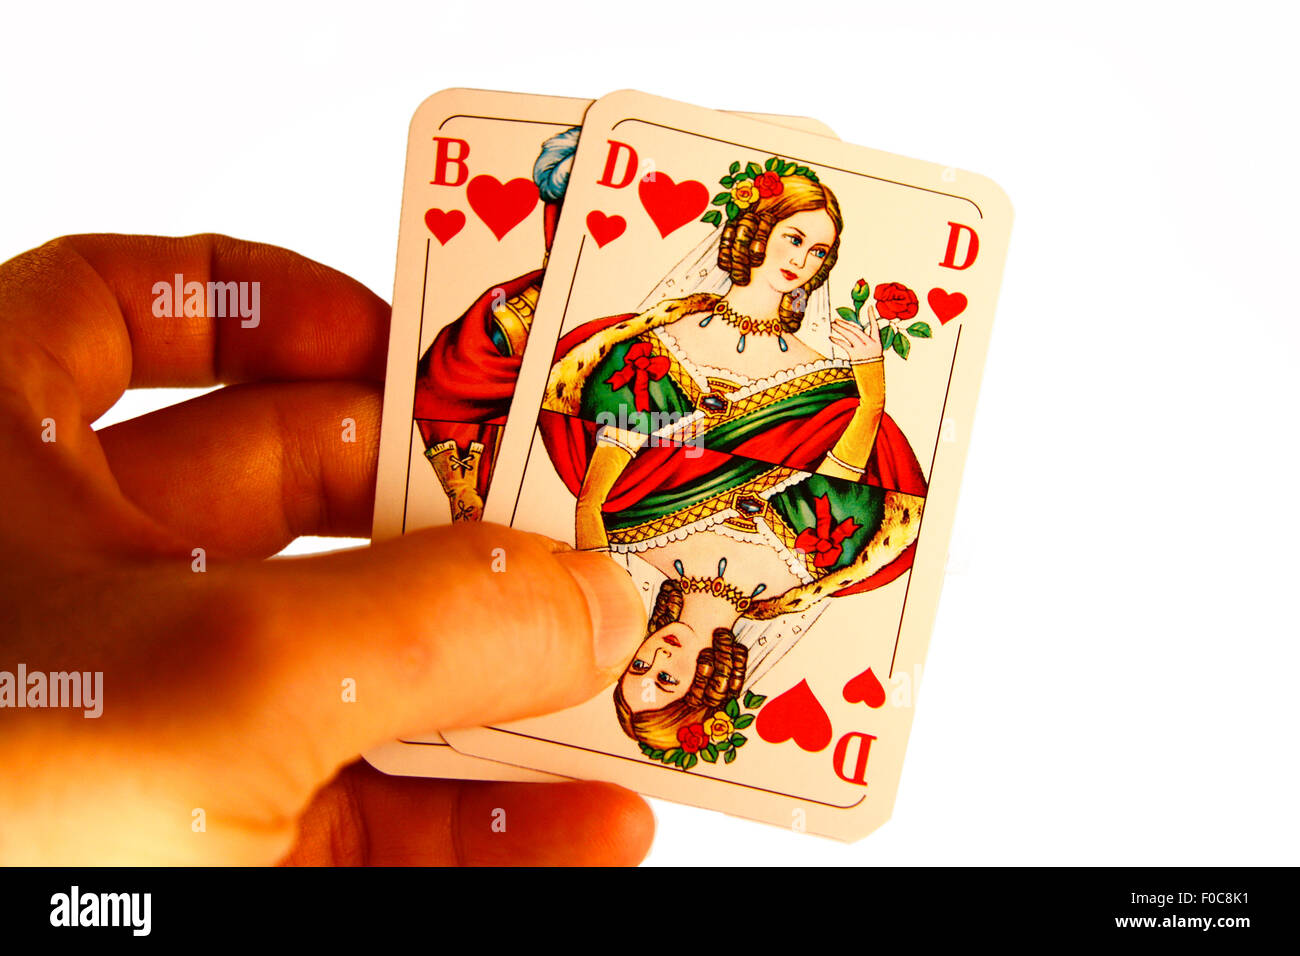 Herz Bube und Herz Dame - Symbolbild Kartenspiel/ card game. Stock Photo